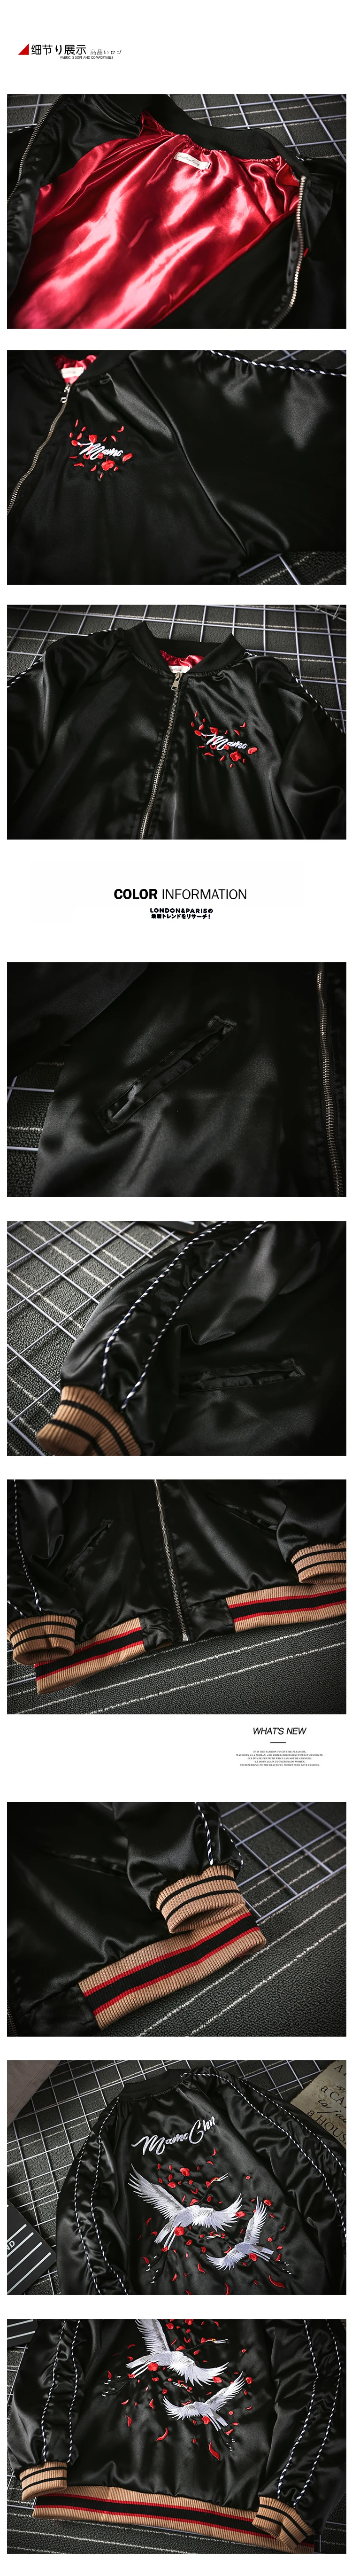 Тренд Вышивка Повседневная бейсбольная одежда мужская куртка Авиатор кран шелковый атлас дизайн Осень Зима Красивый пальто бренд